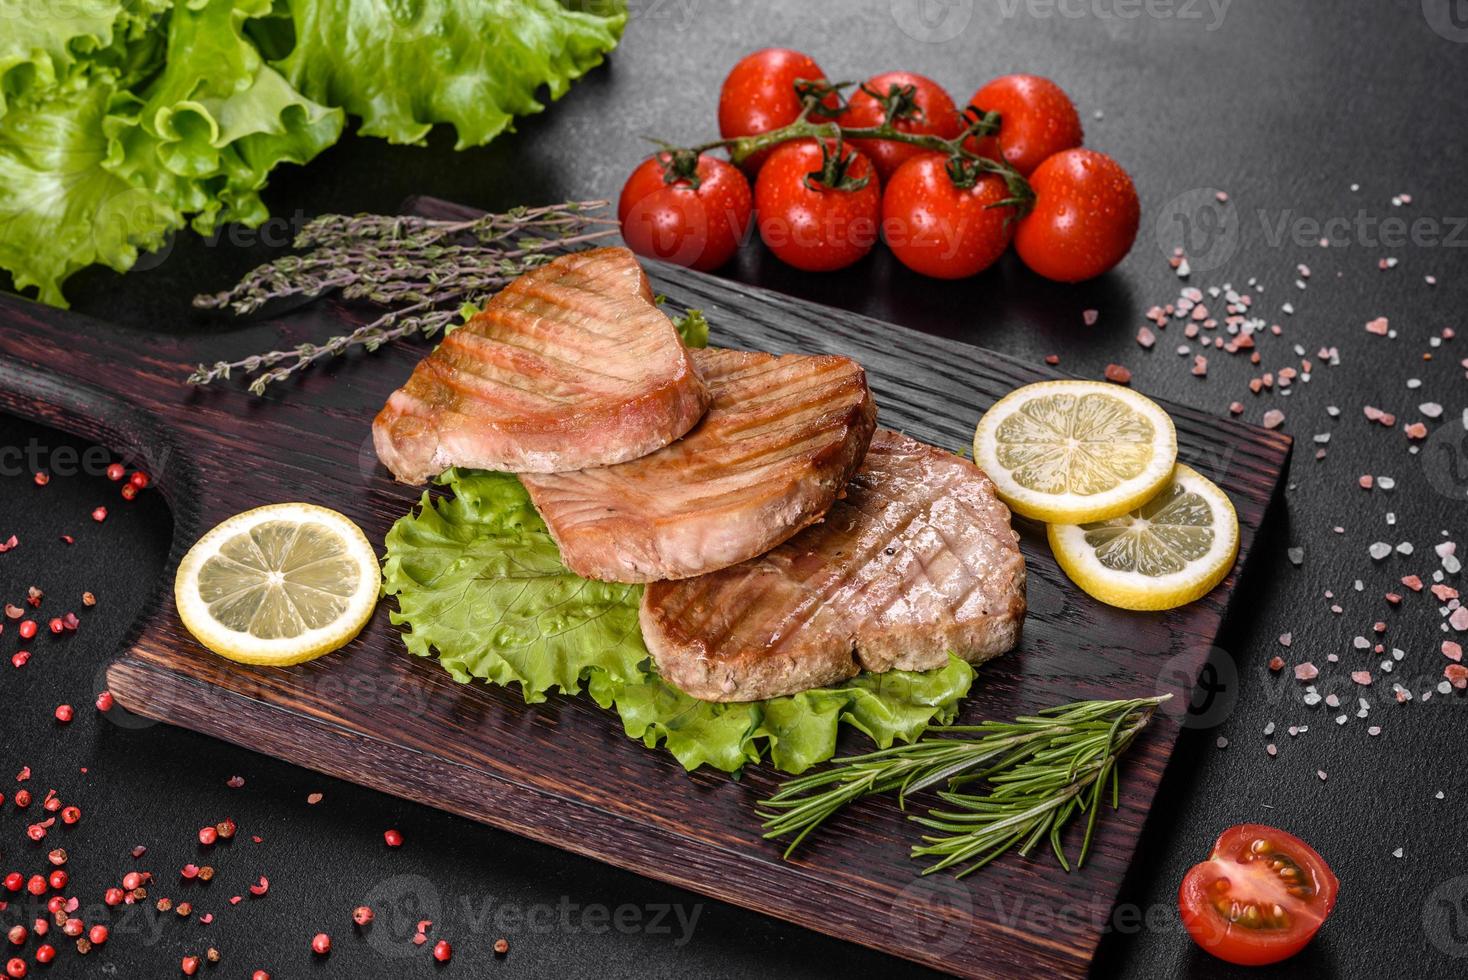 délicieux steak de thon juteux grillé aux épices et herbes photo